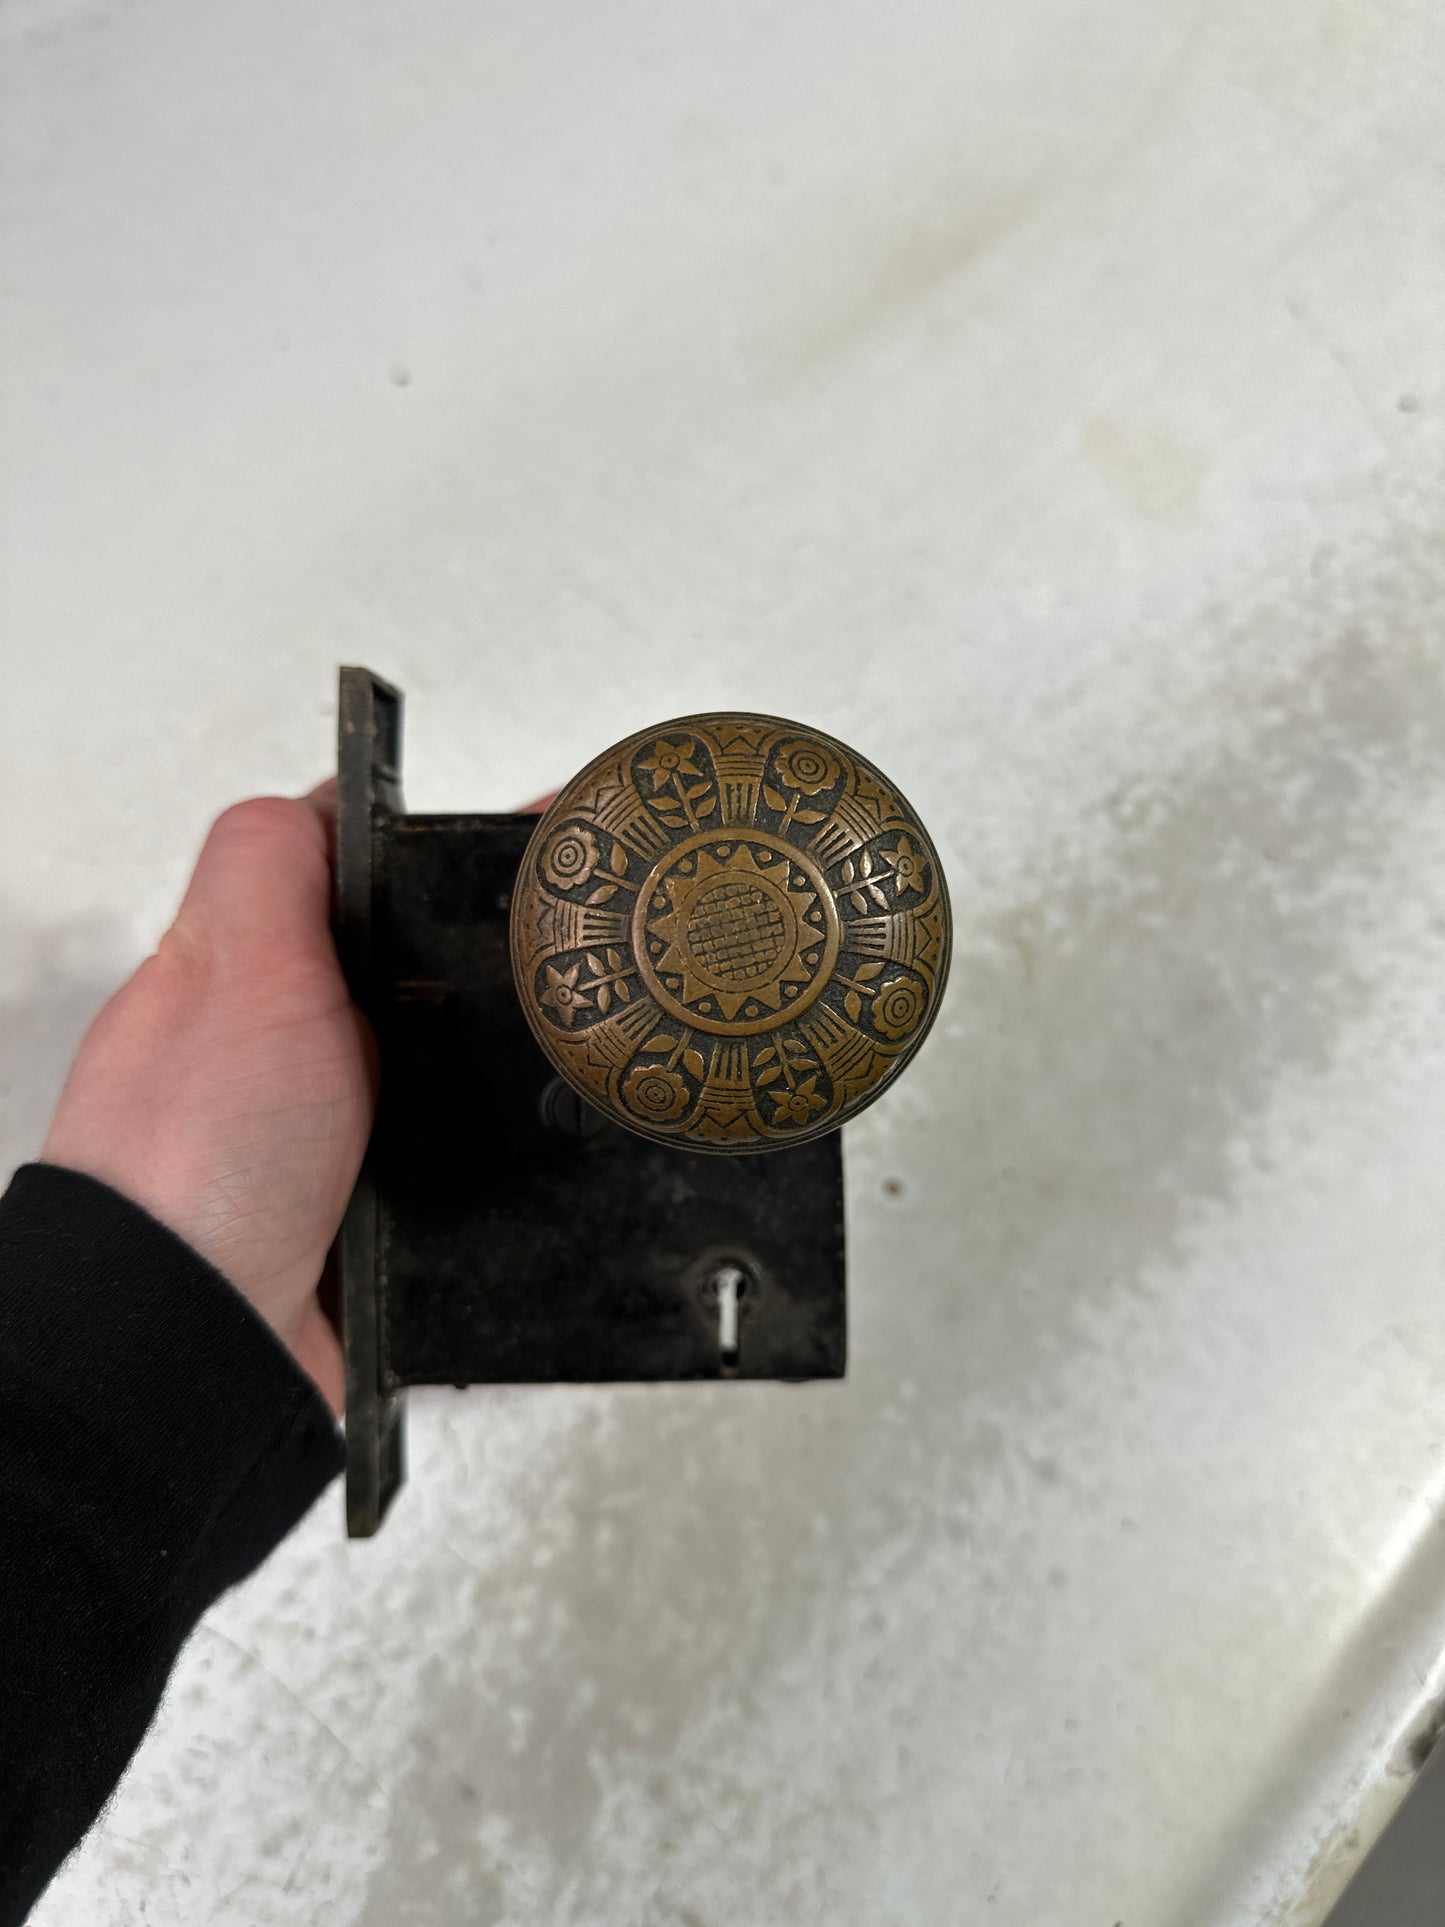 Antique Solid Brass Doorknob